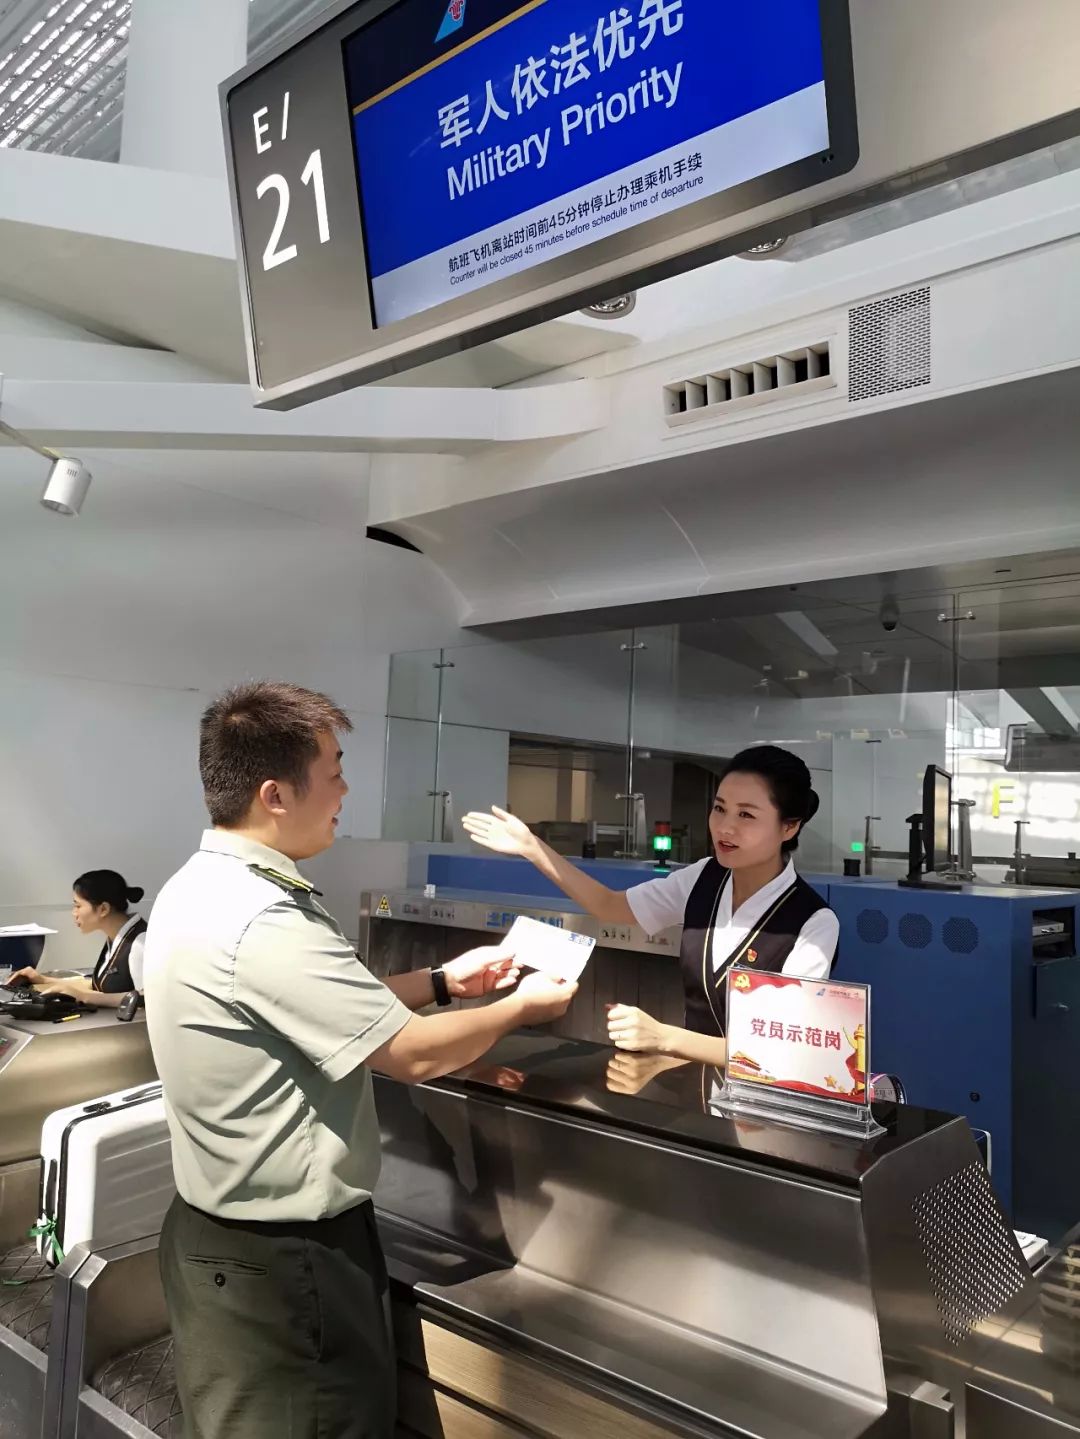 某部軍官在廣州白雲機場軍人依法優先櫃檯辦理乘機手續